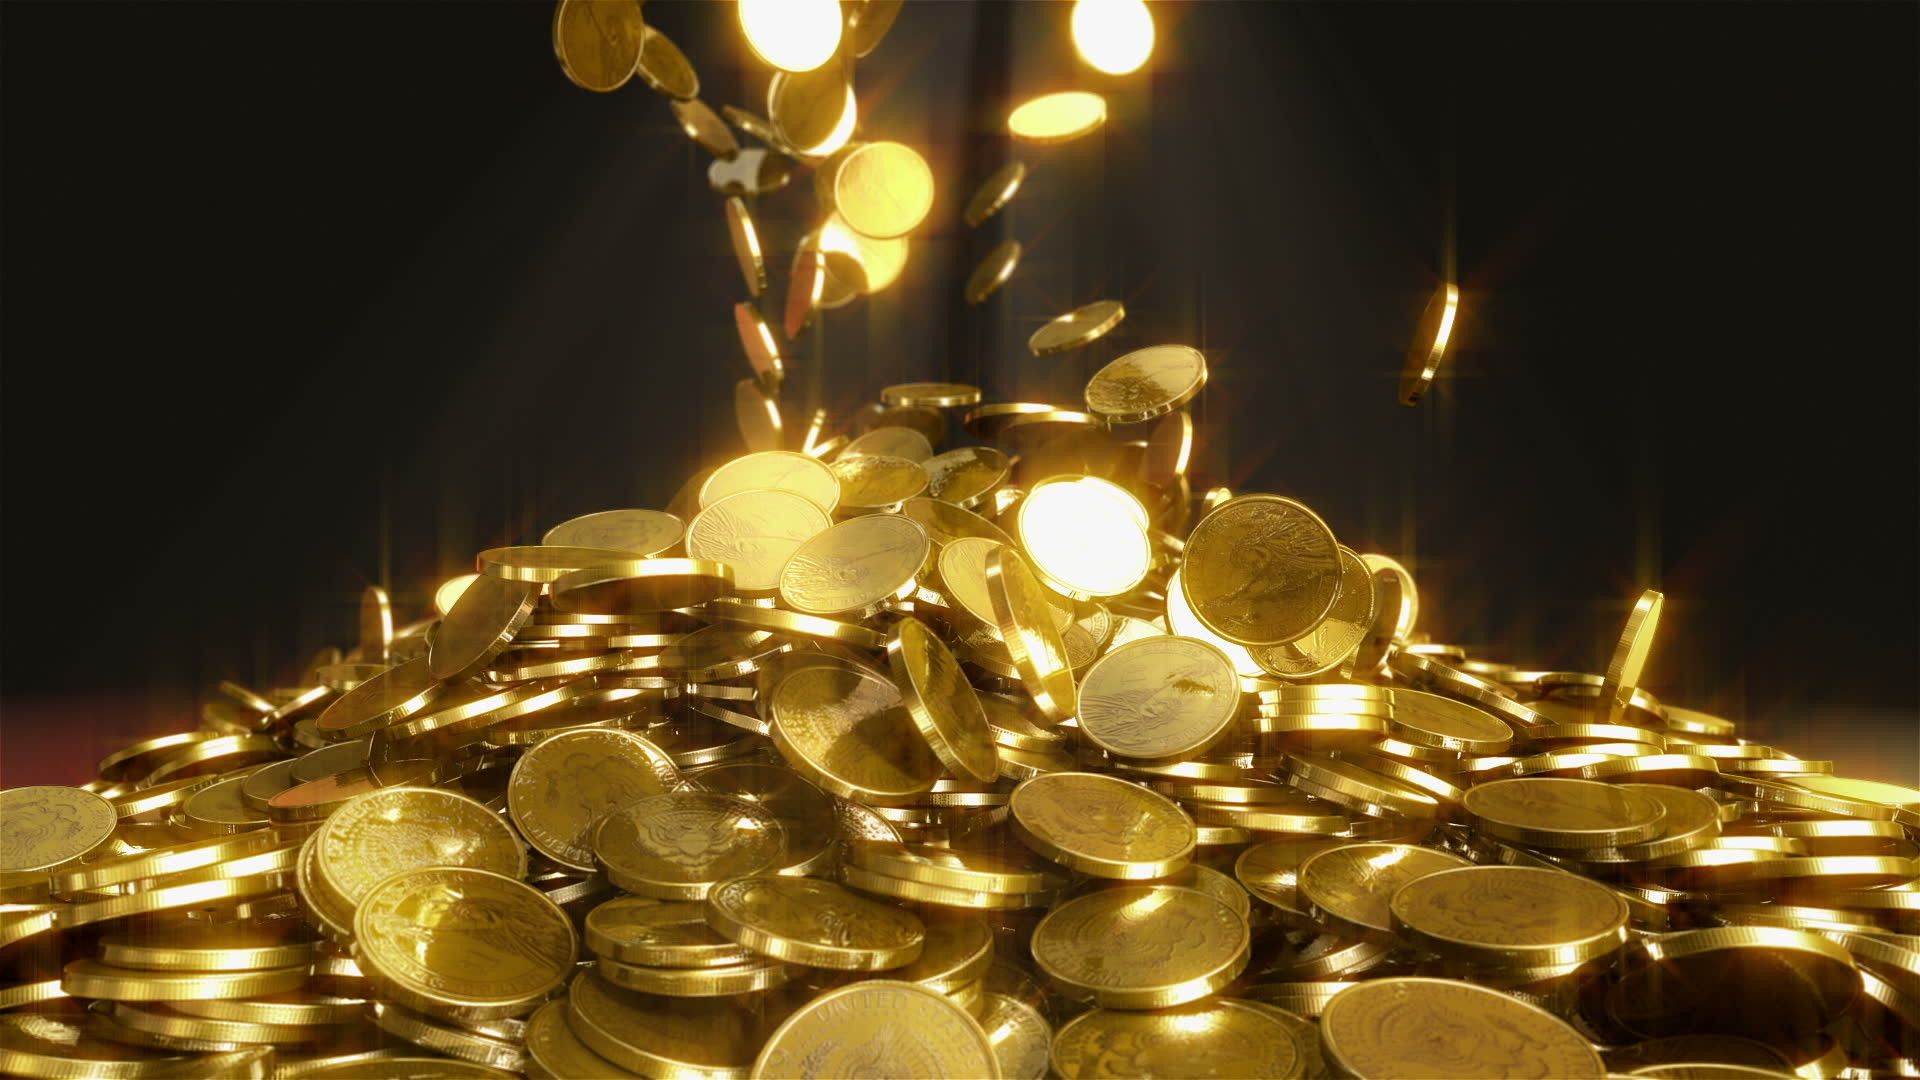 1080p Gold Coins Wallpaper HD